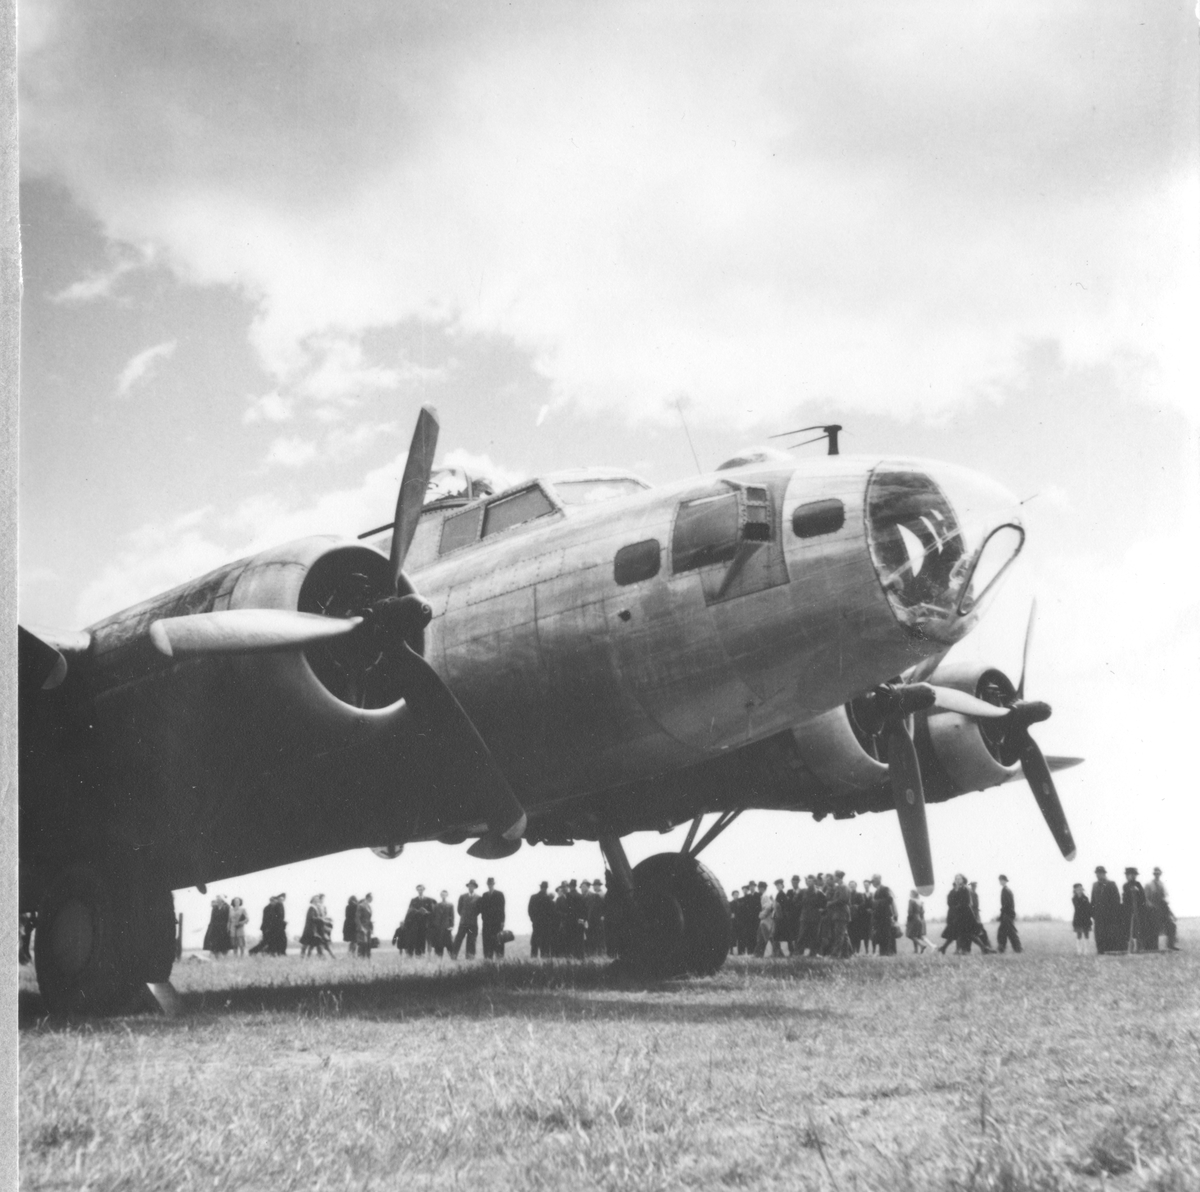 Närbild. Amerikanska bombflygplanet Boeing B-17 Flying Fortress står på ett flygfält. I bakgrunden står en folksamling.